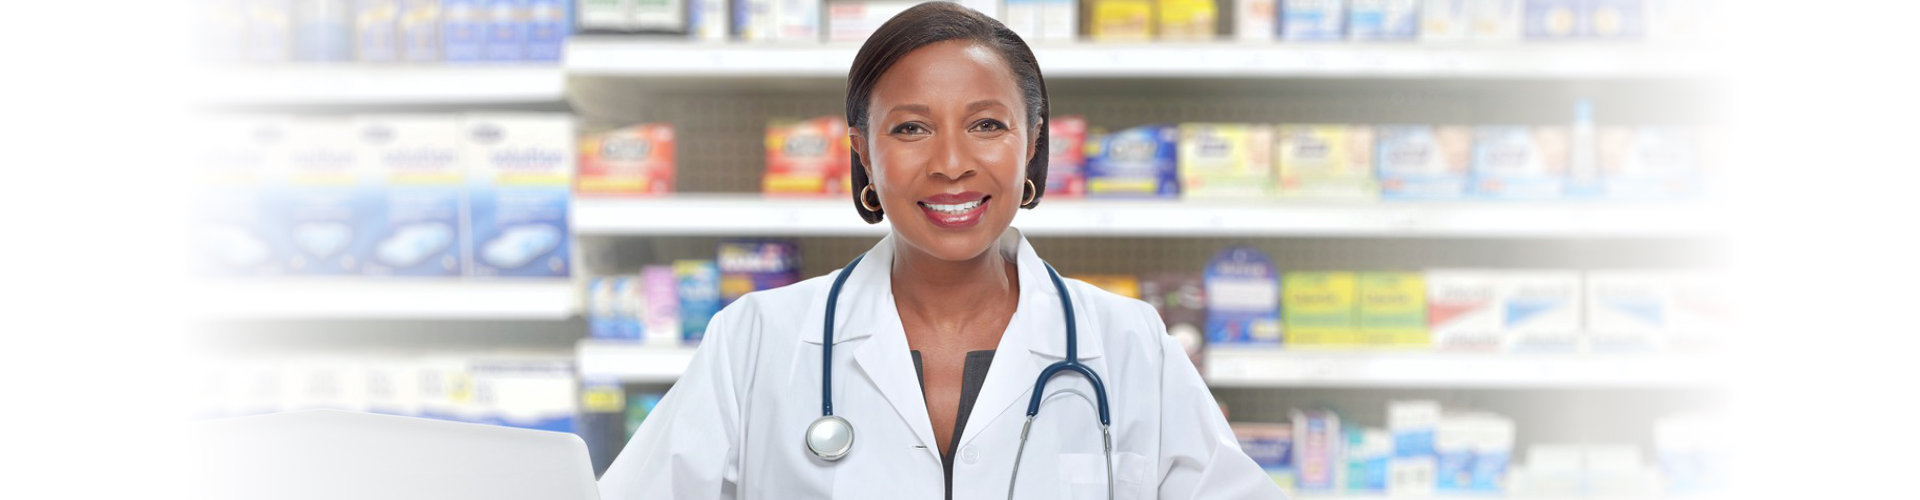 smiling female pharmacist